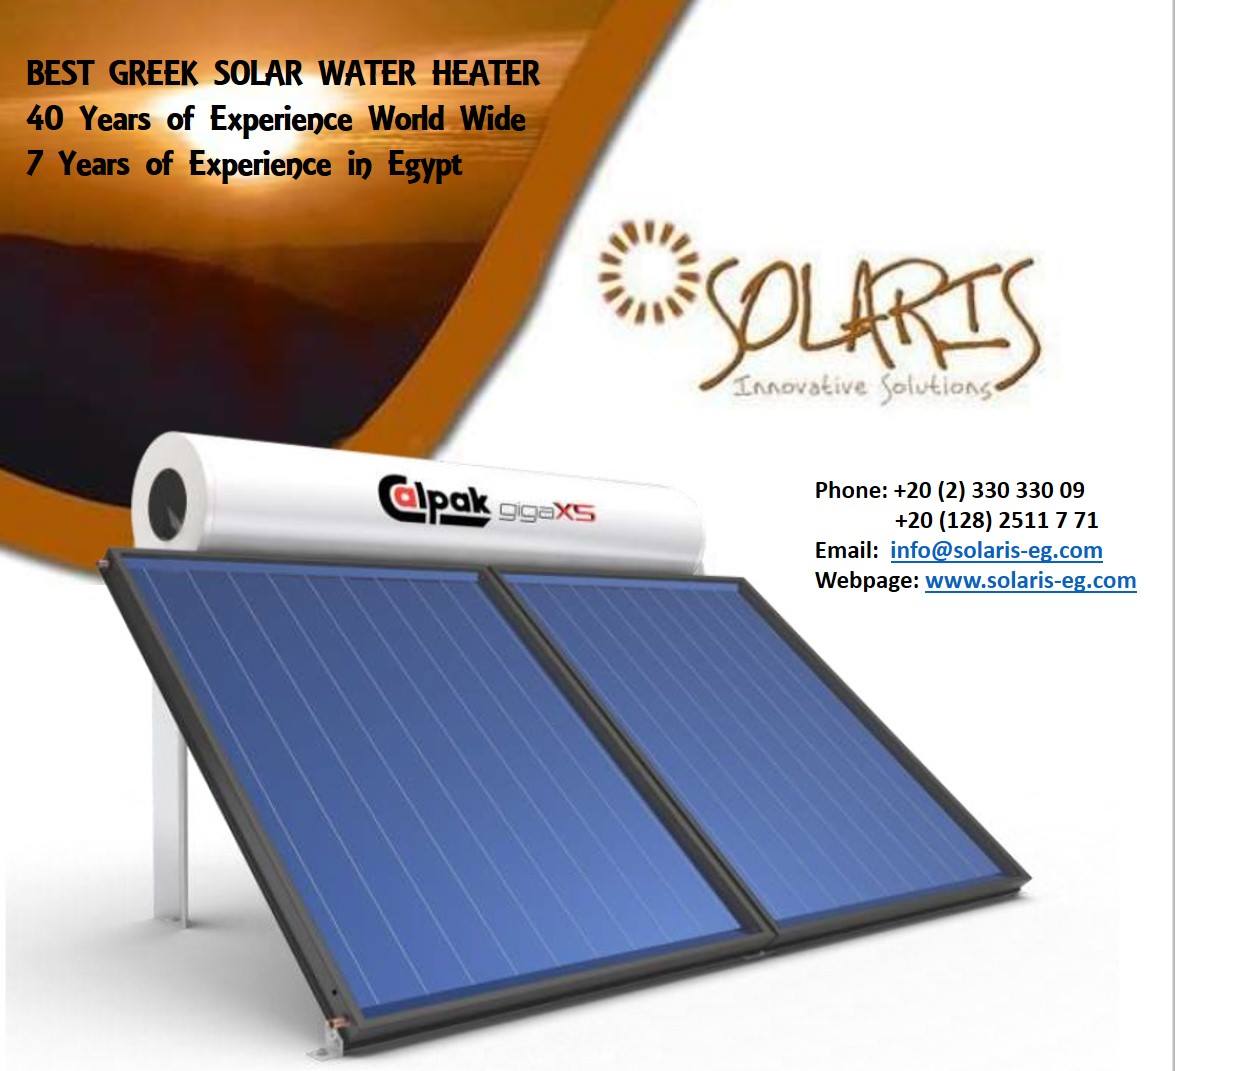 Solaris Innovative Solutions